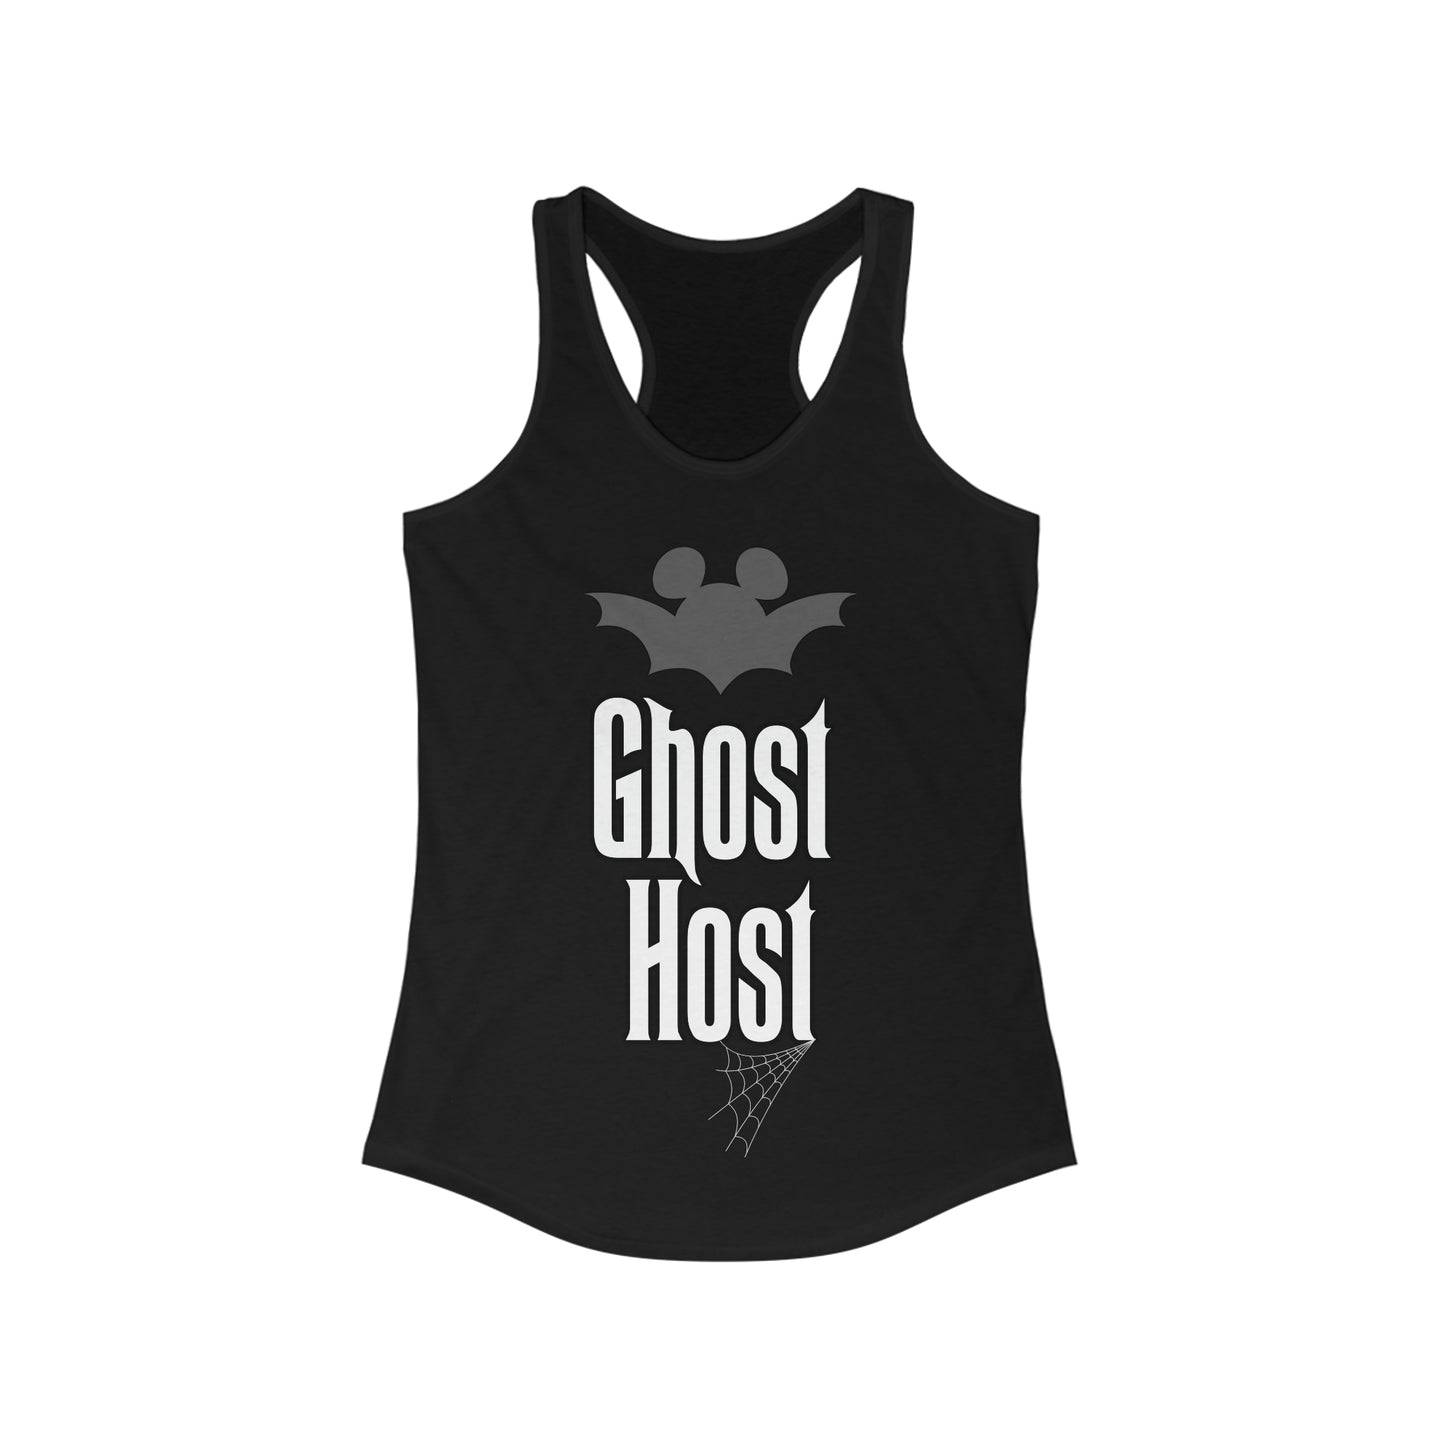 Ghost Host - Women's Racerback Tank